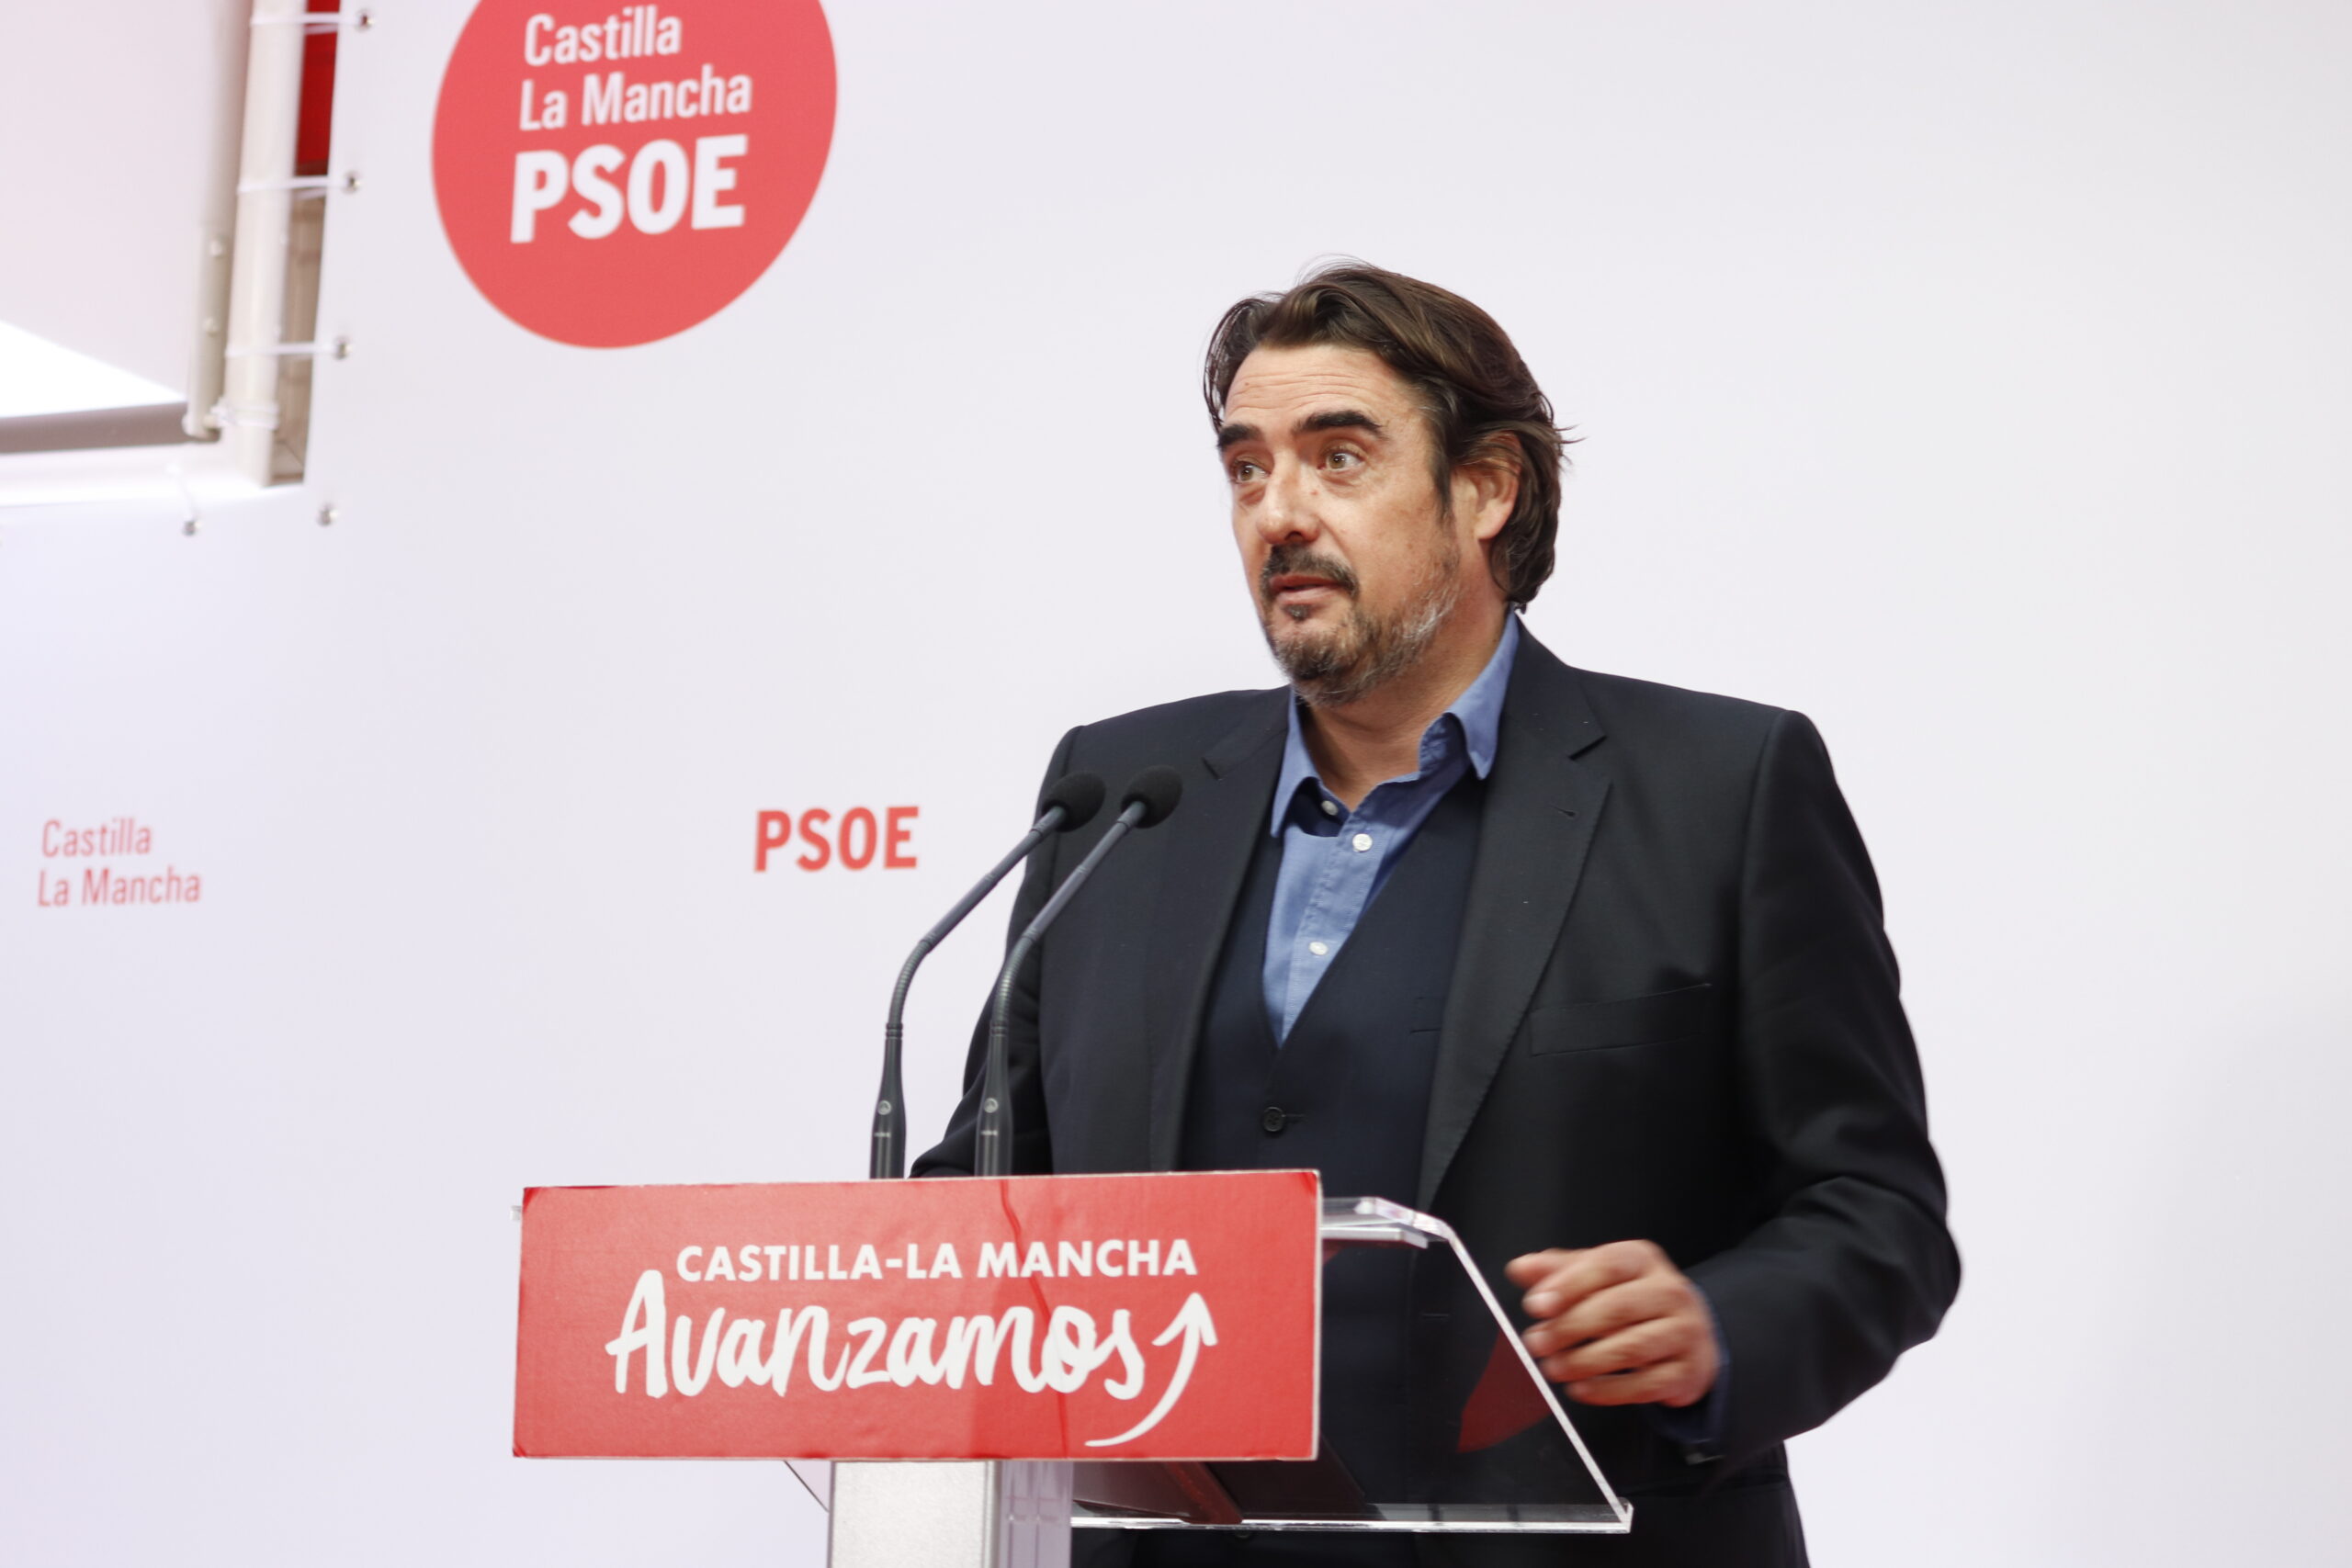 Esteban critica que el proyecto político del PP de CLM lo presente Conde, “vetado de por vida por el Consejo de Europa”